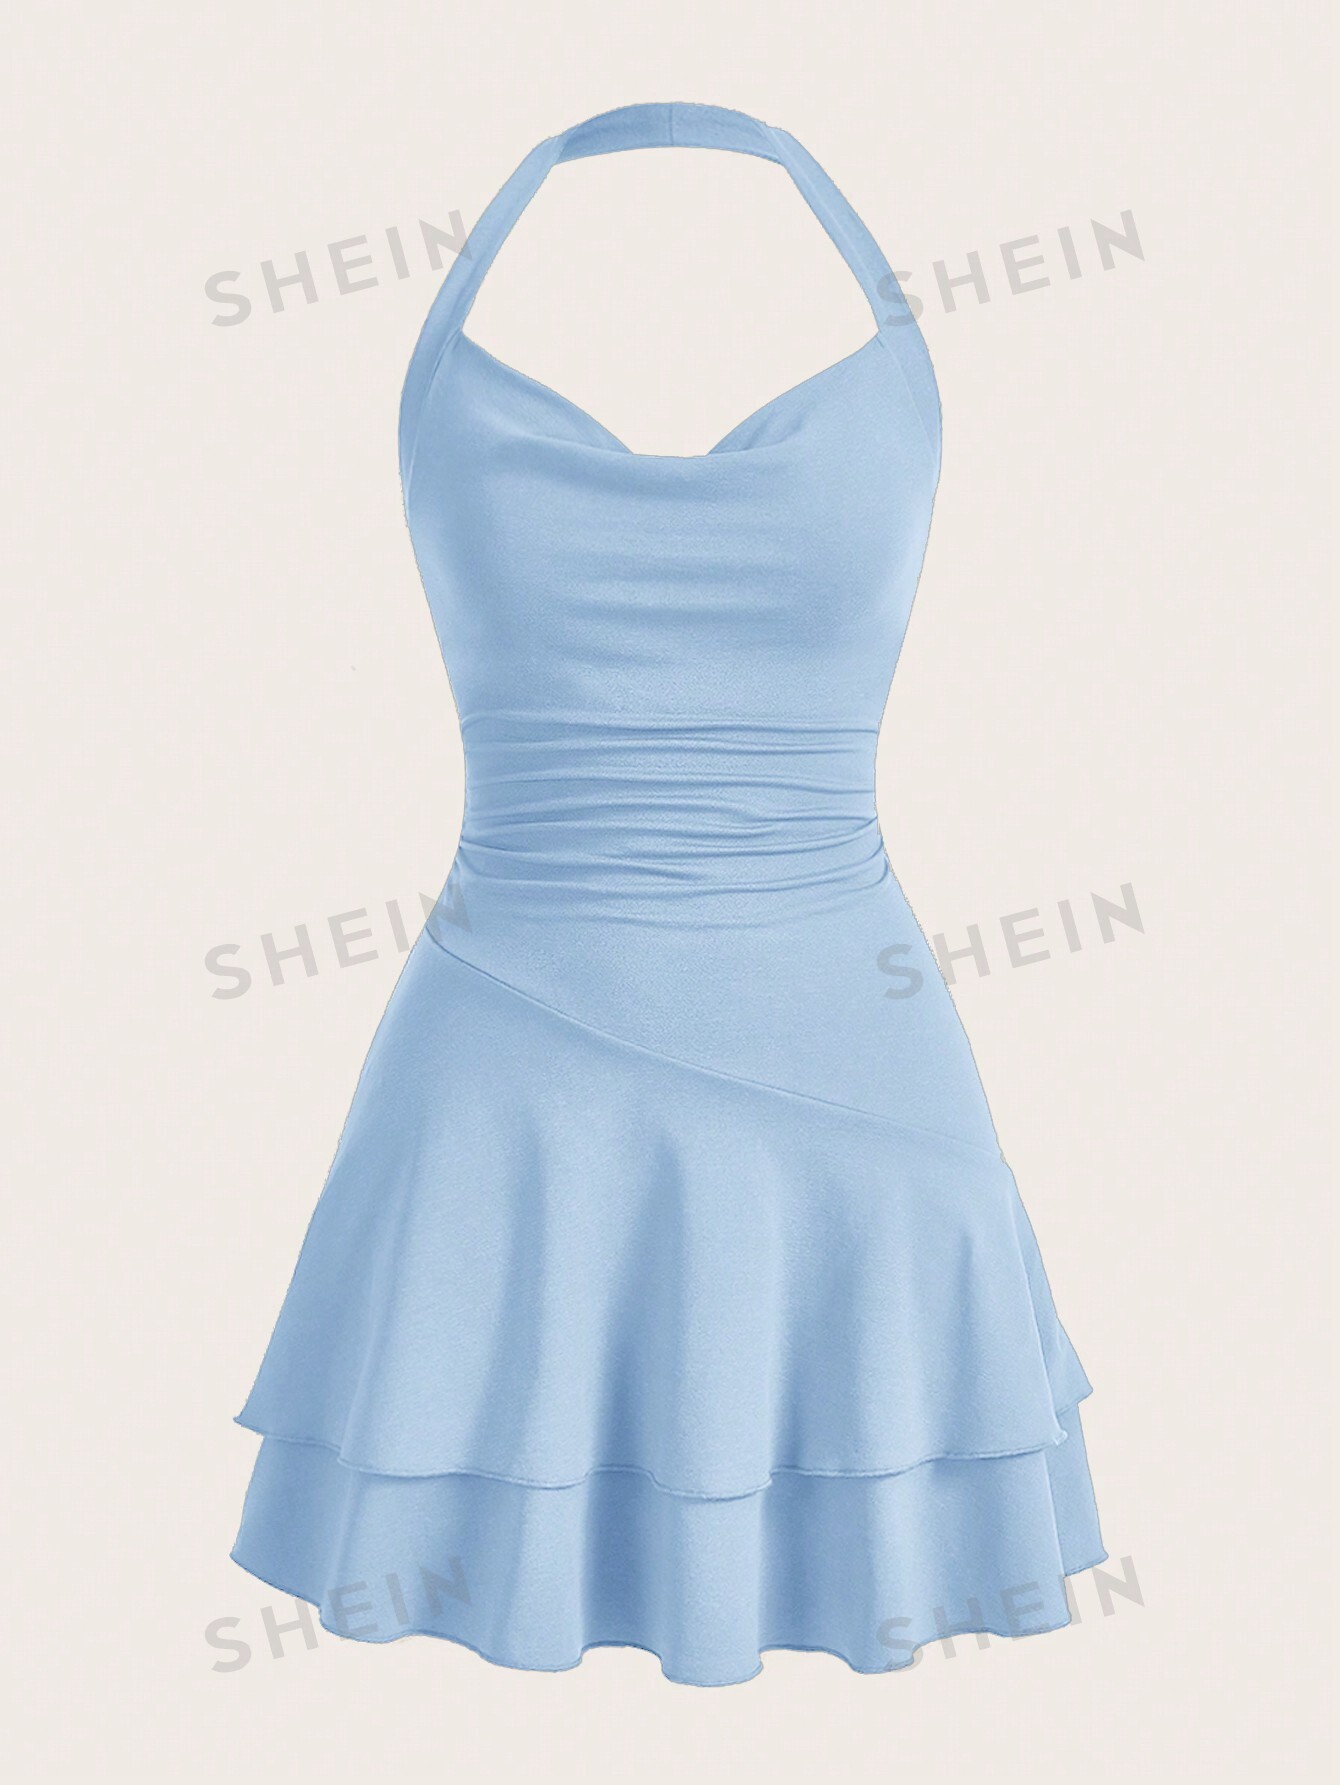 SHEIN MOD однотонное женское платье с бретелькой на шее и многослойным подолом, голубые